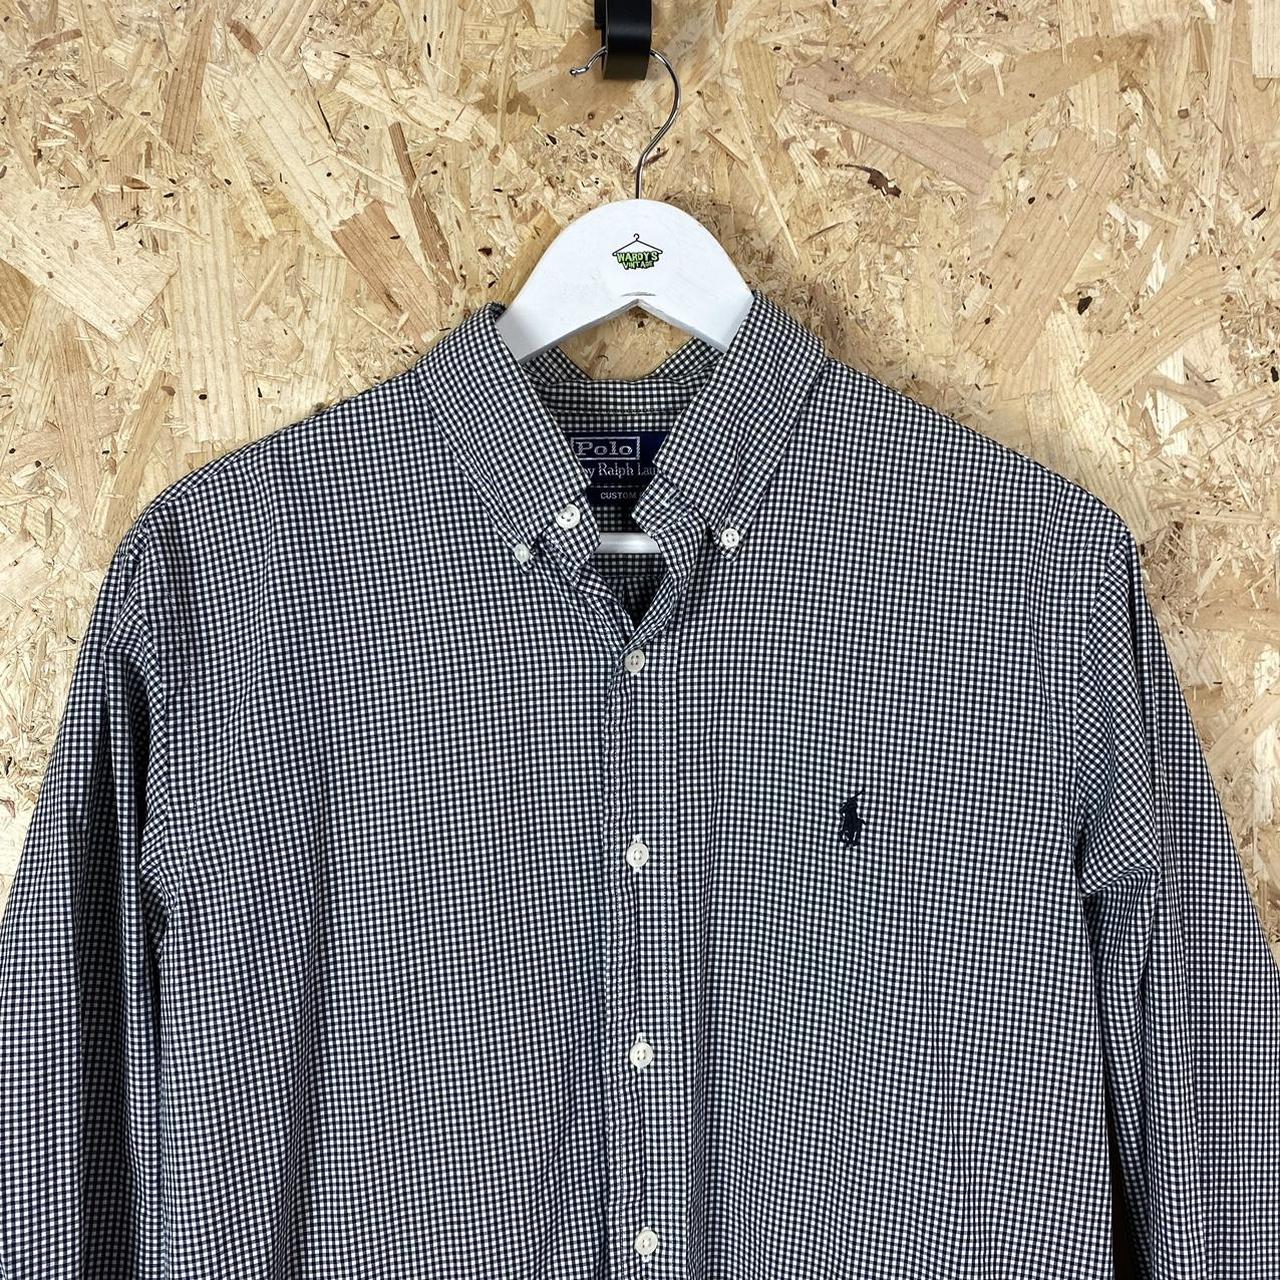 Ralph Lauren check shirt medium